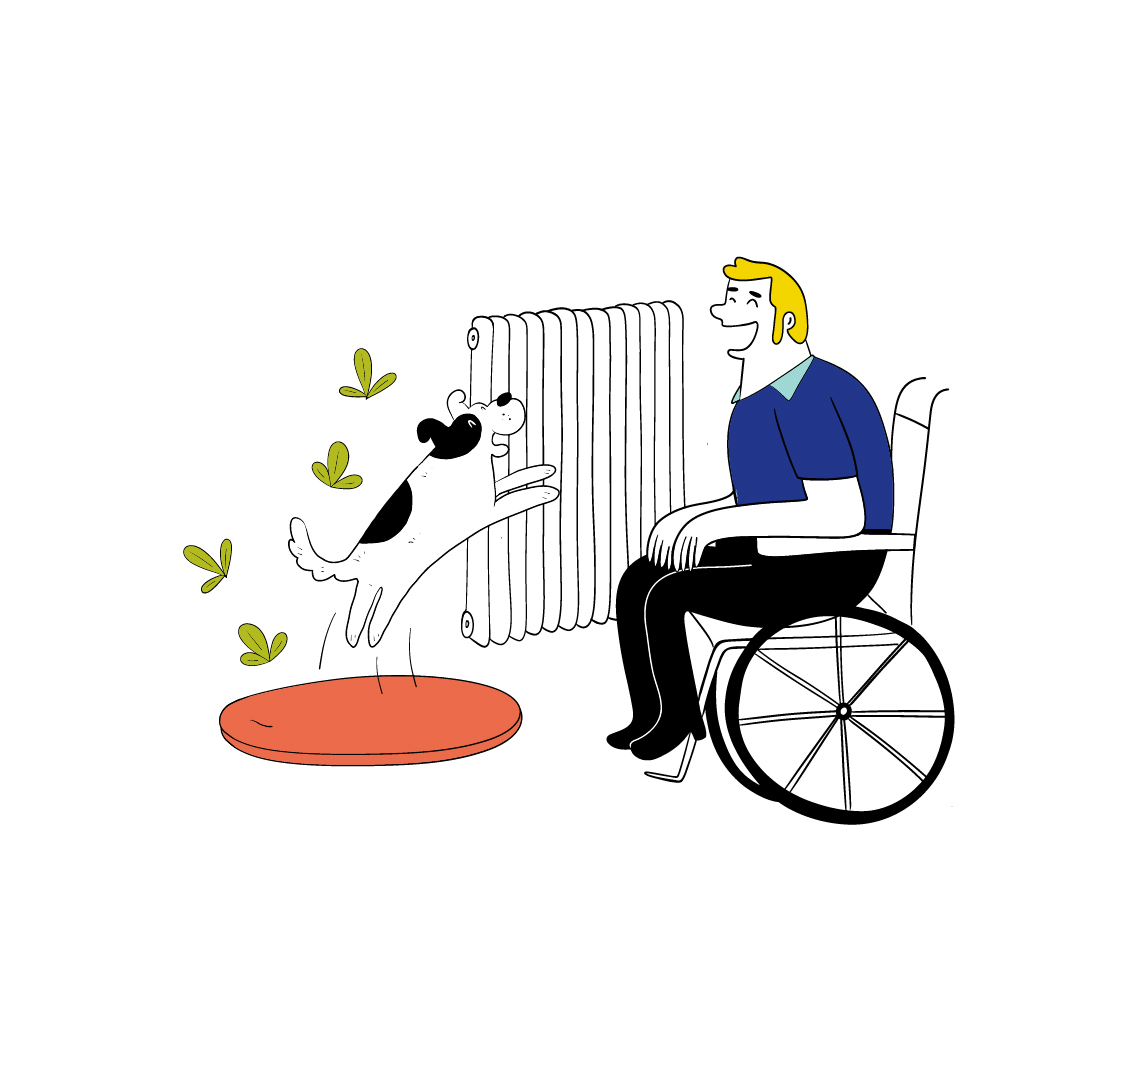 Ein von Energiearmut betroffener, lächelnder Mann sitzt in einem Rollstuhl. Sein Hund springt vor ihm freudig in die Luft. Im Hintergrund ist ein Heizkörper.